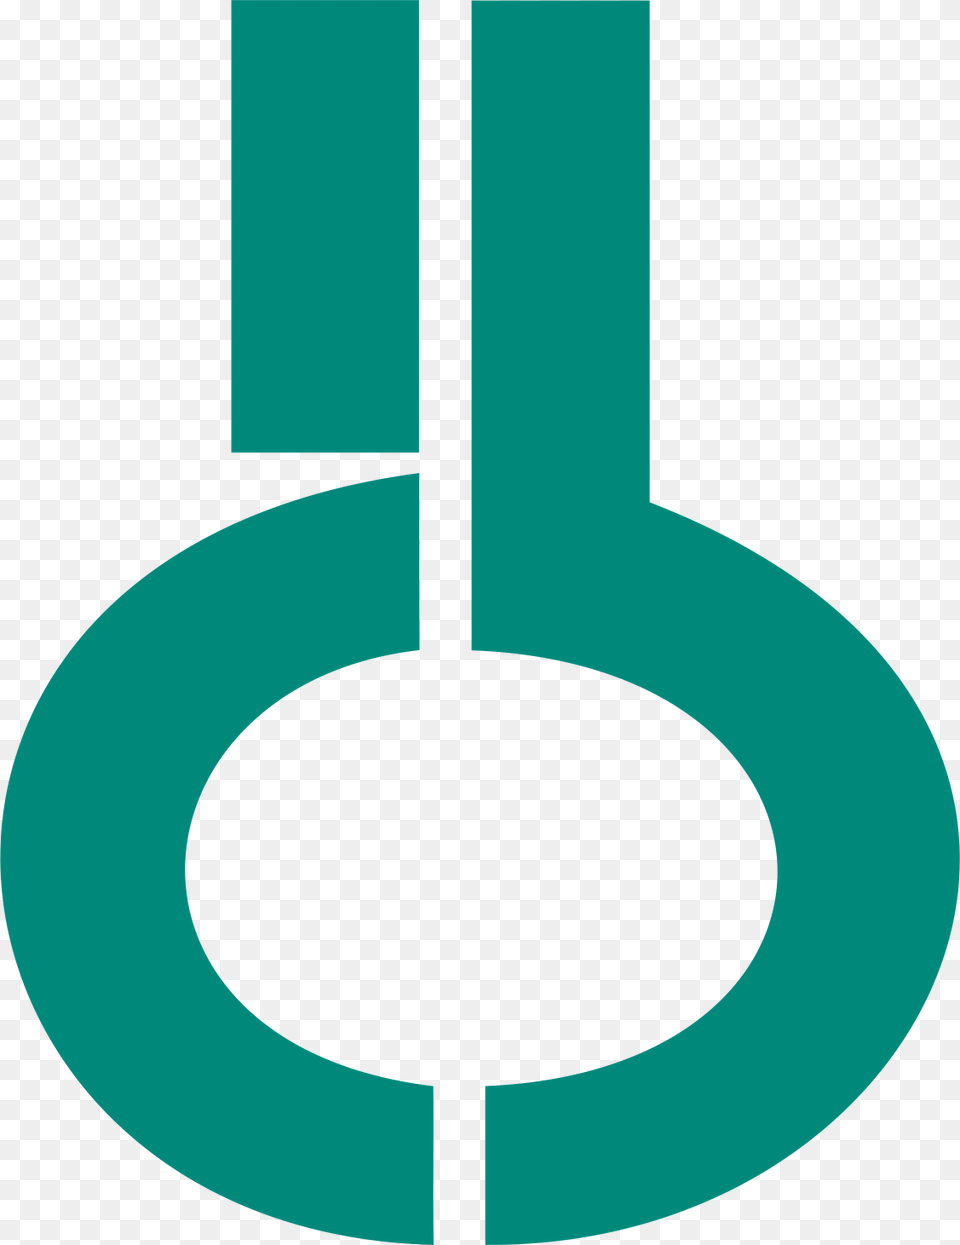 Logo Sem Sigla Sem Borda Fundo Transp Icb Usp, Symbol, Text, Animal, Fish Png